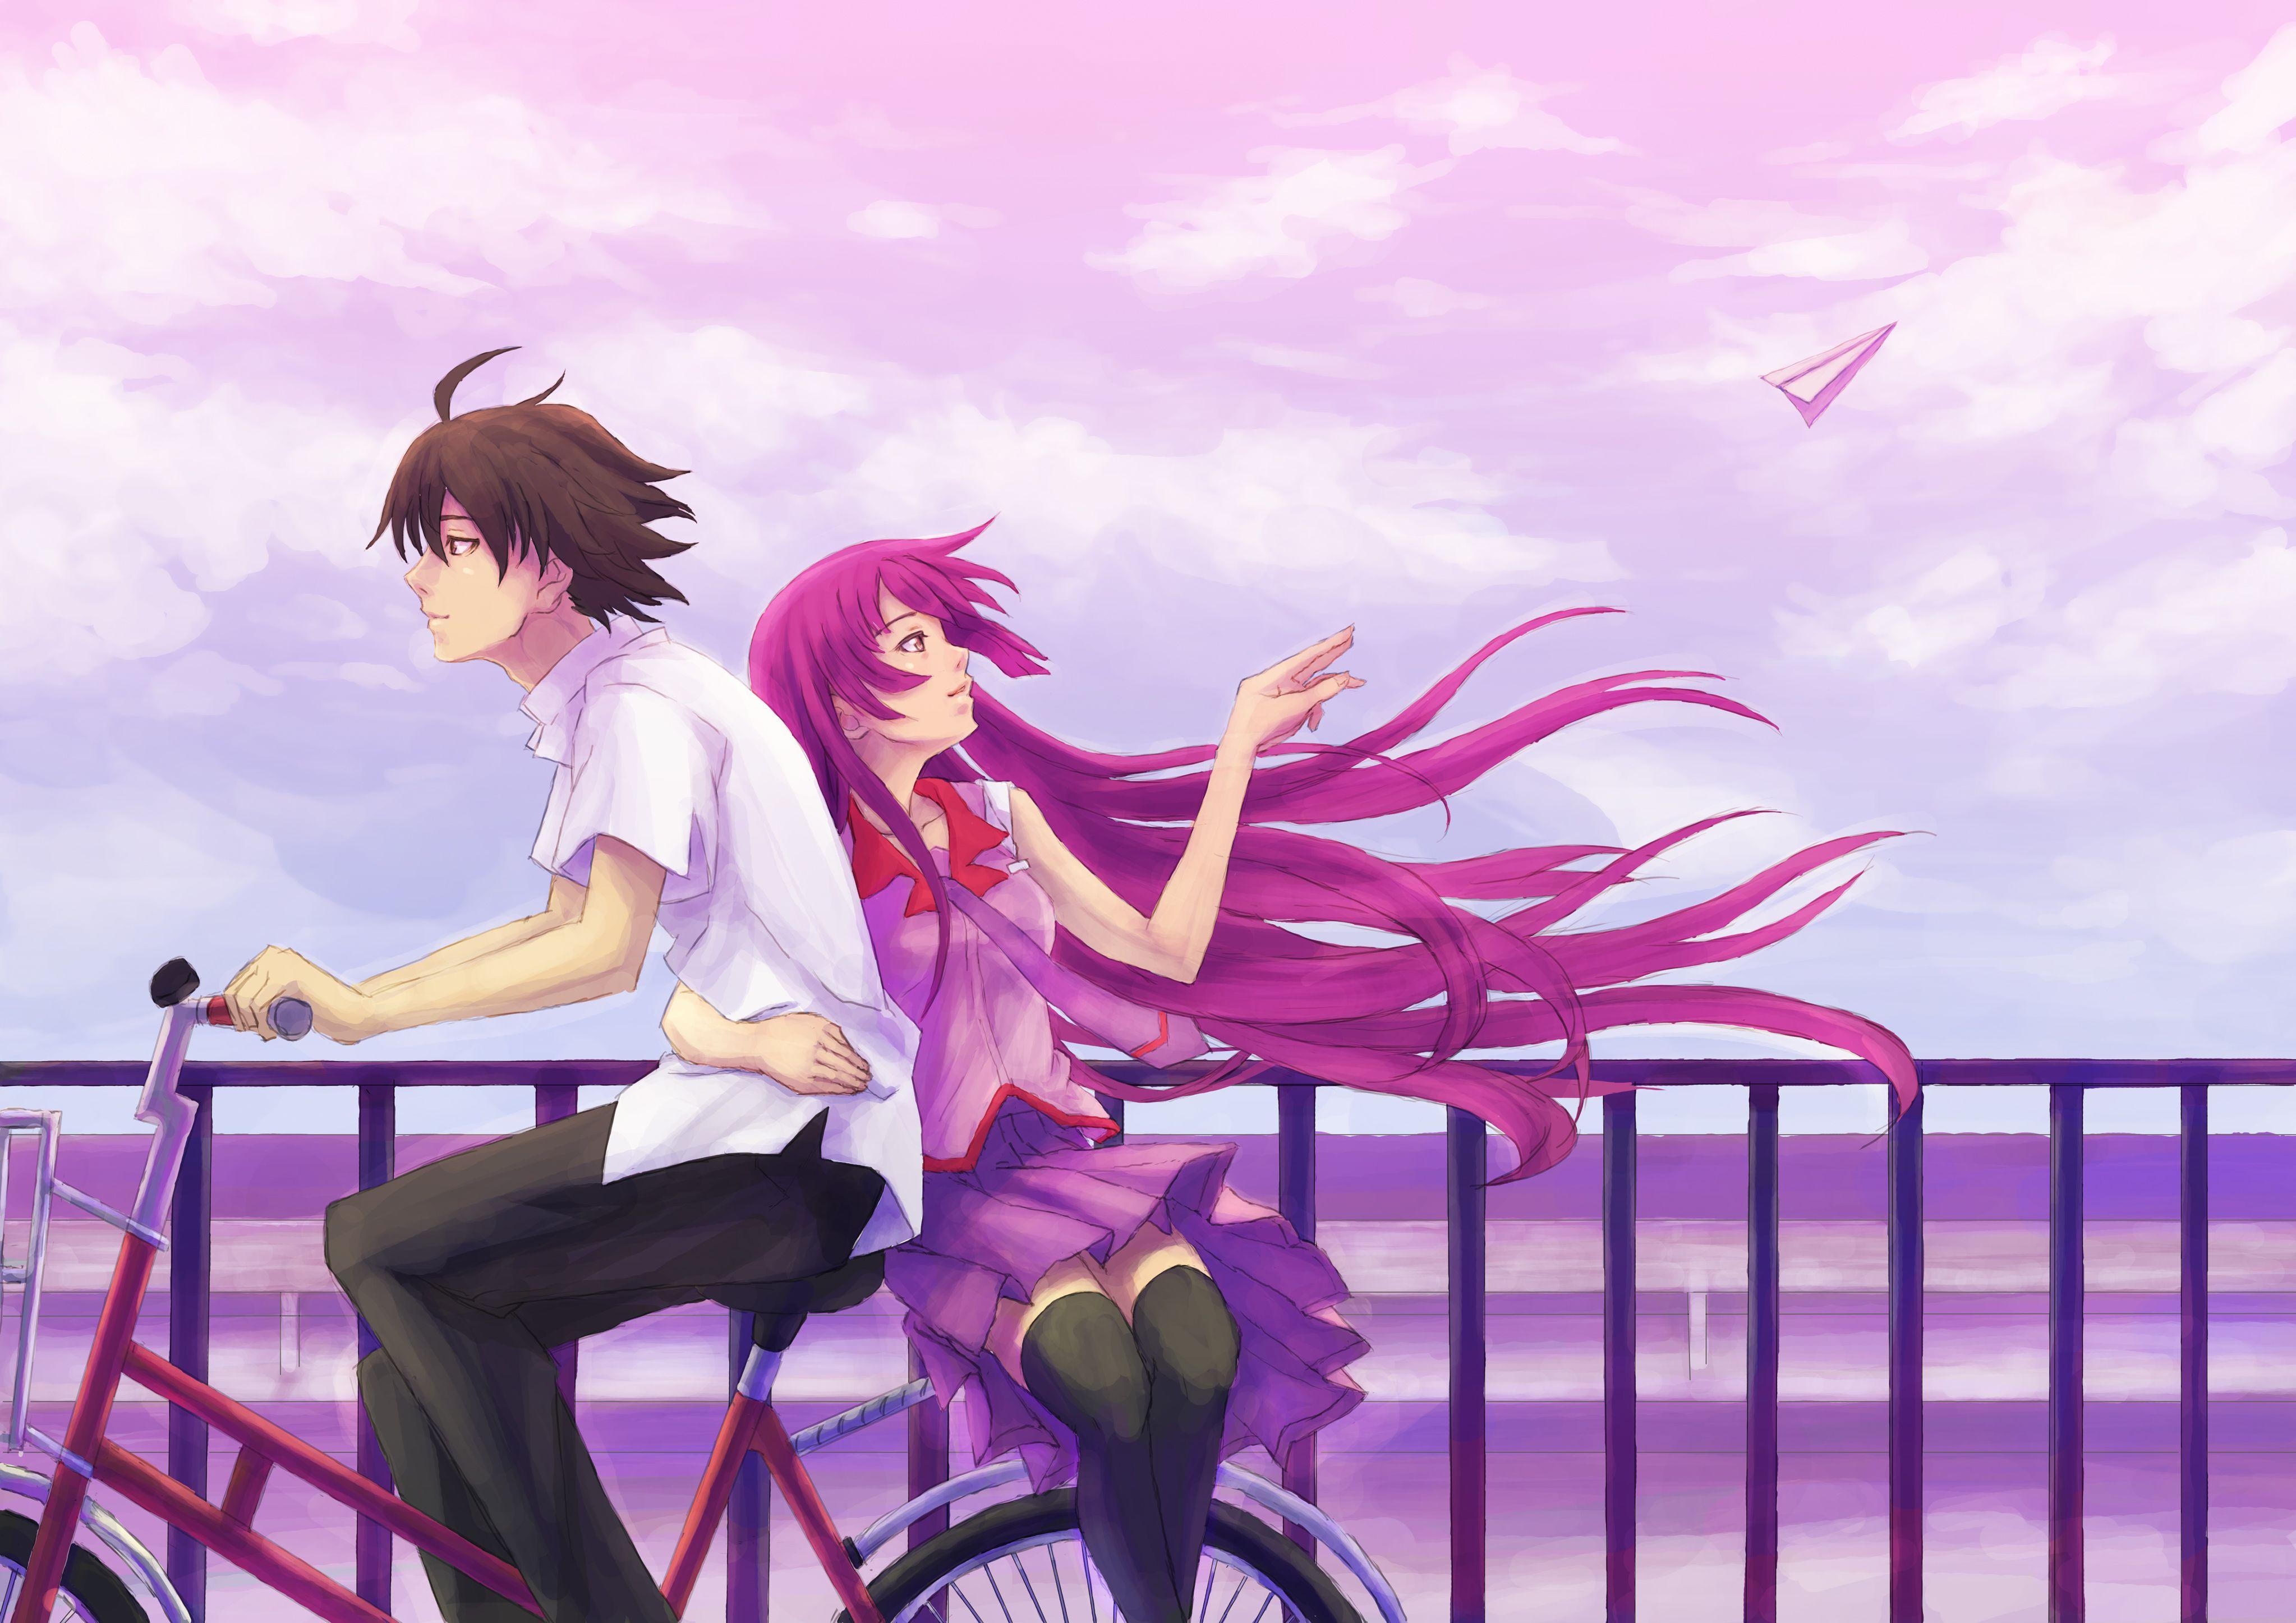 Anime Boy Girl Cycle 4k, HD Anime, 4k Wallpapers, Image